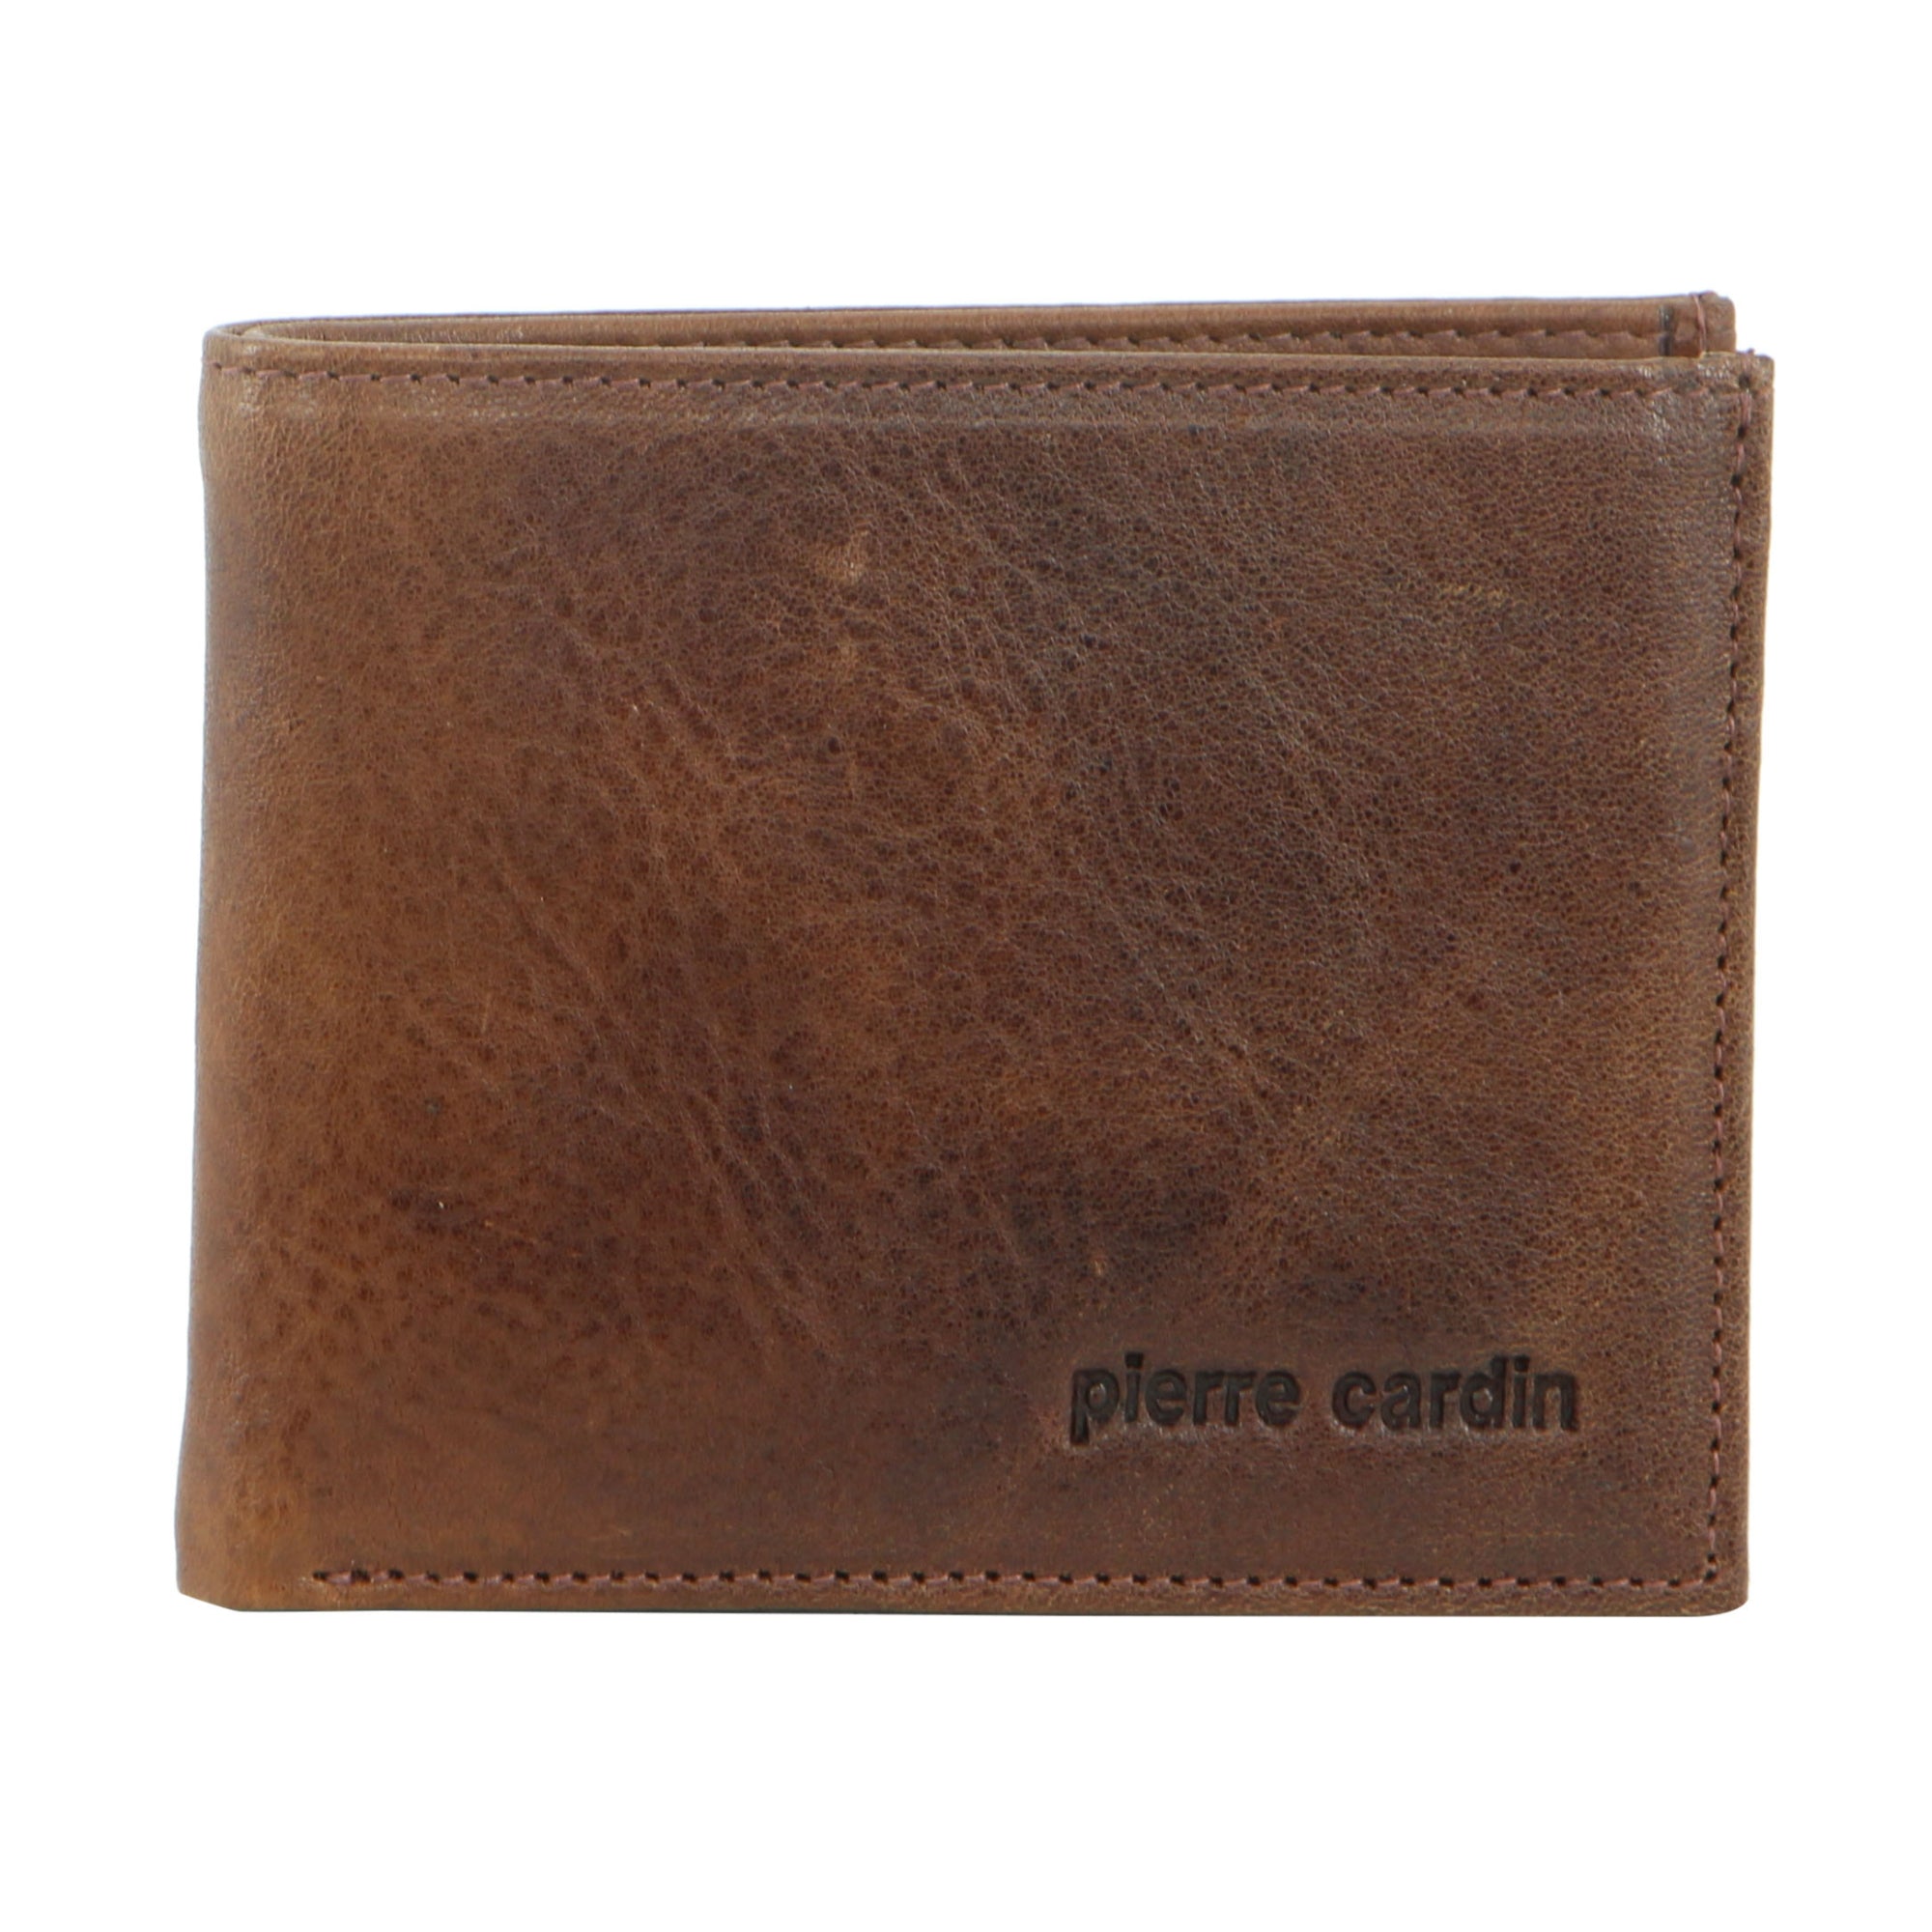 Pierre Cardin Italian Leather Bi-Fold Men's Wallet in Cognac